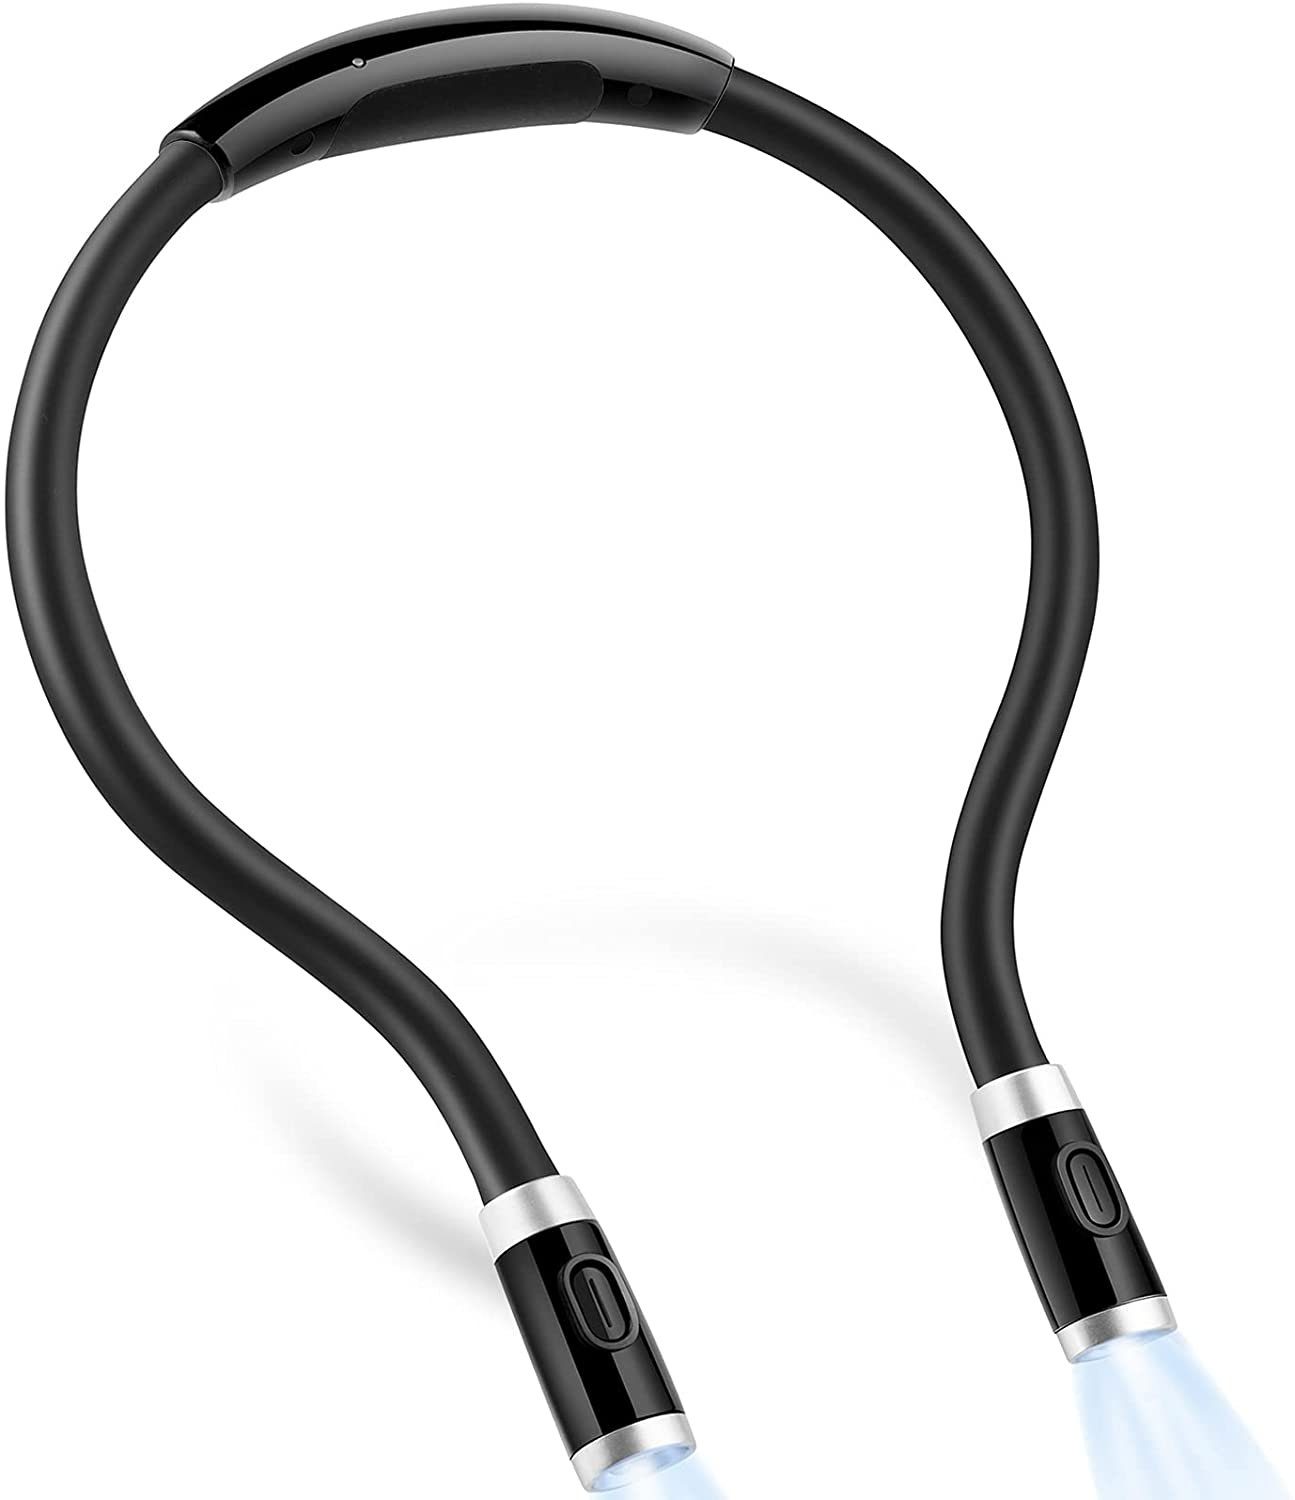 LNIDEAS 9 Modi Halslampe LED Leselampe,Handarbeitslampe Flexibel Halslampe Wiederaufladbare mit 3 Helligkeitsstufen-3 Farbtemperatur,USB Kabel Inklusive für Lesen Sport Laufen und Aktivitäten 